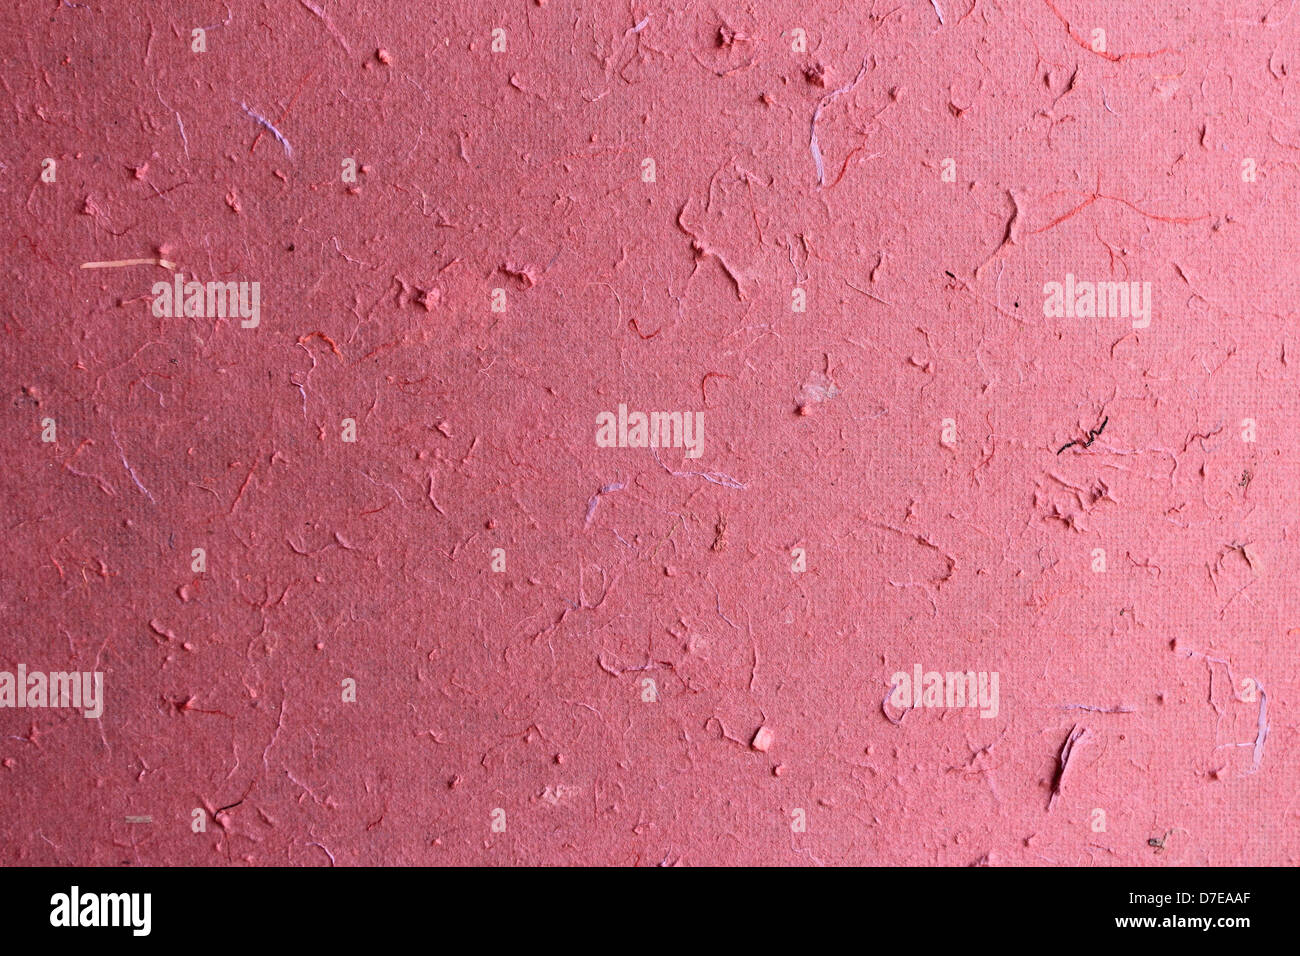 Rosa papel de morera artesanales textura del fondo Foto de stock